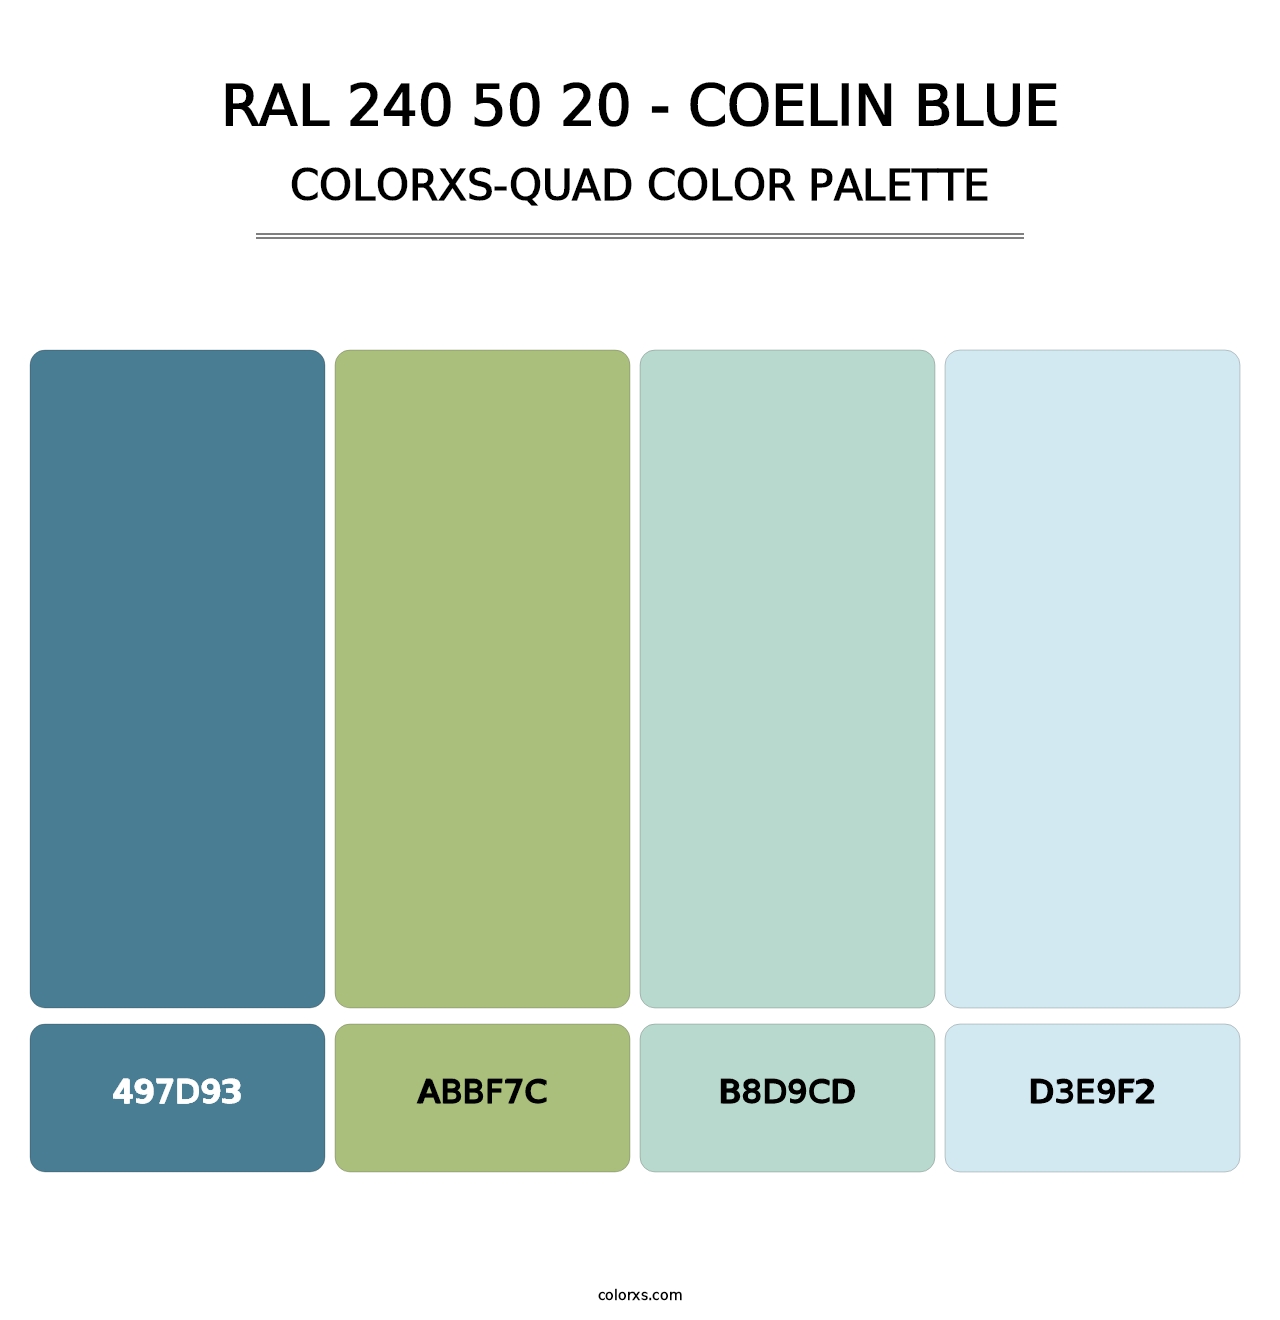 RAL 240 50 20 - Coelin Blue - Colorxs Quad Palette